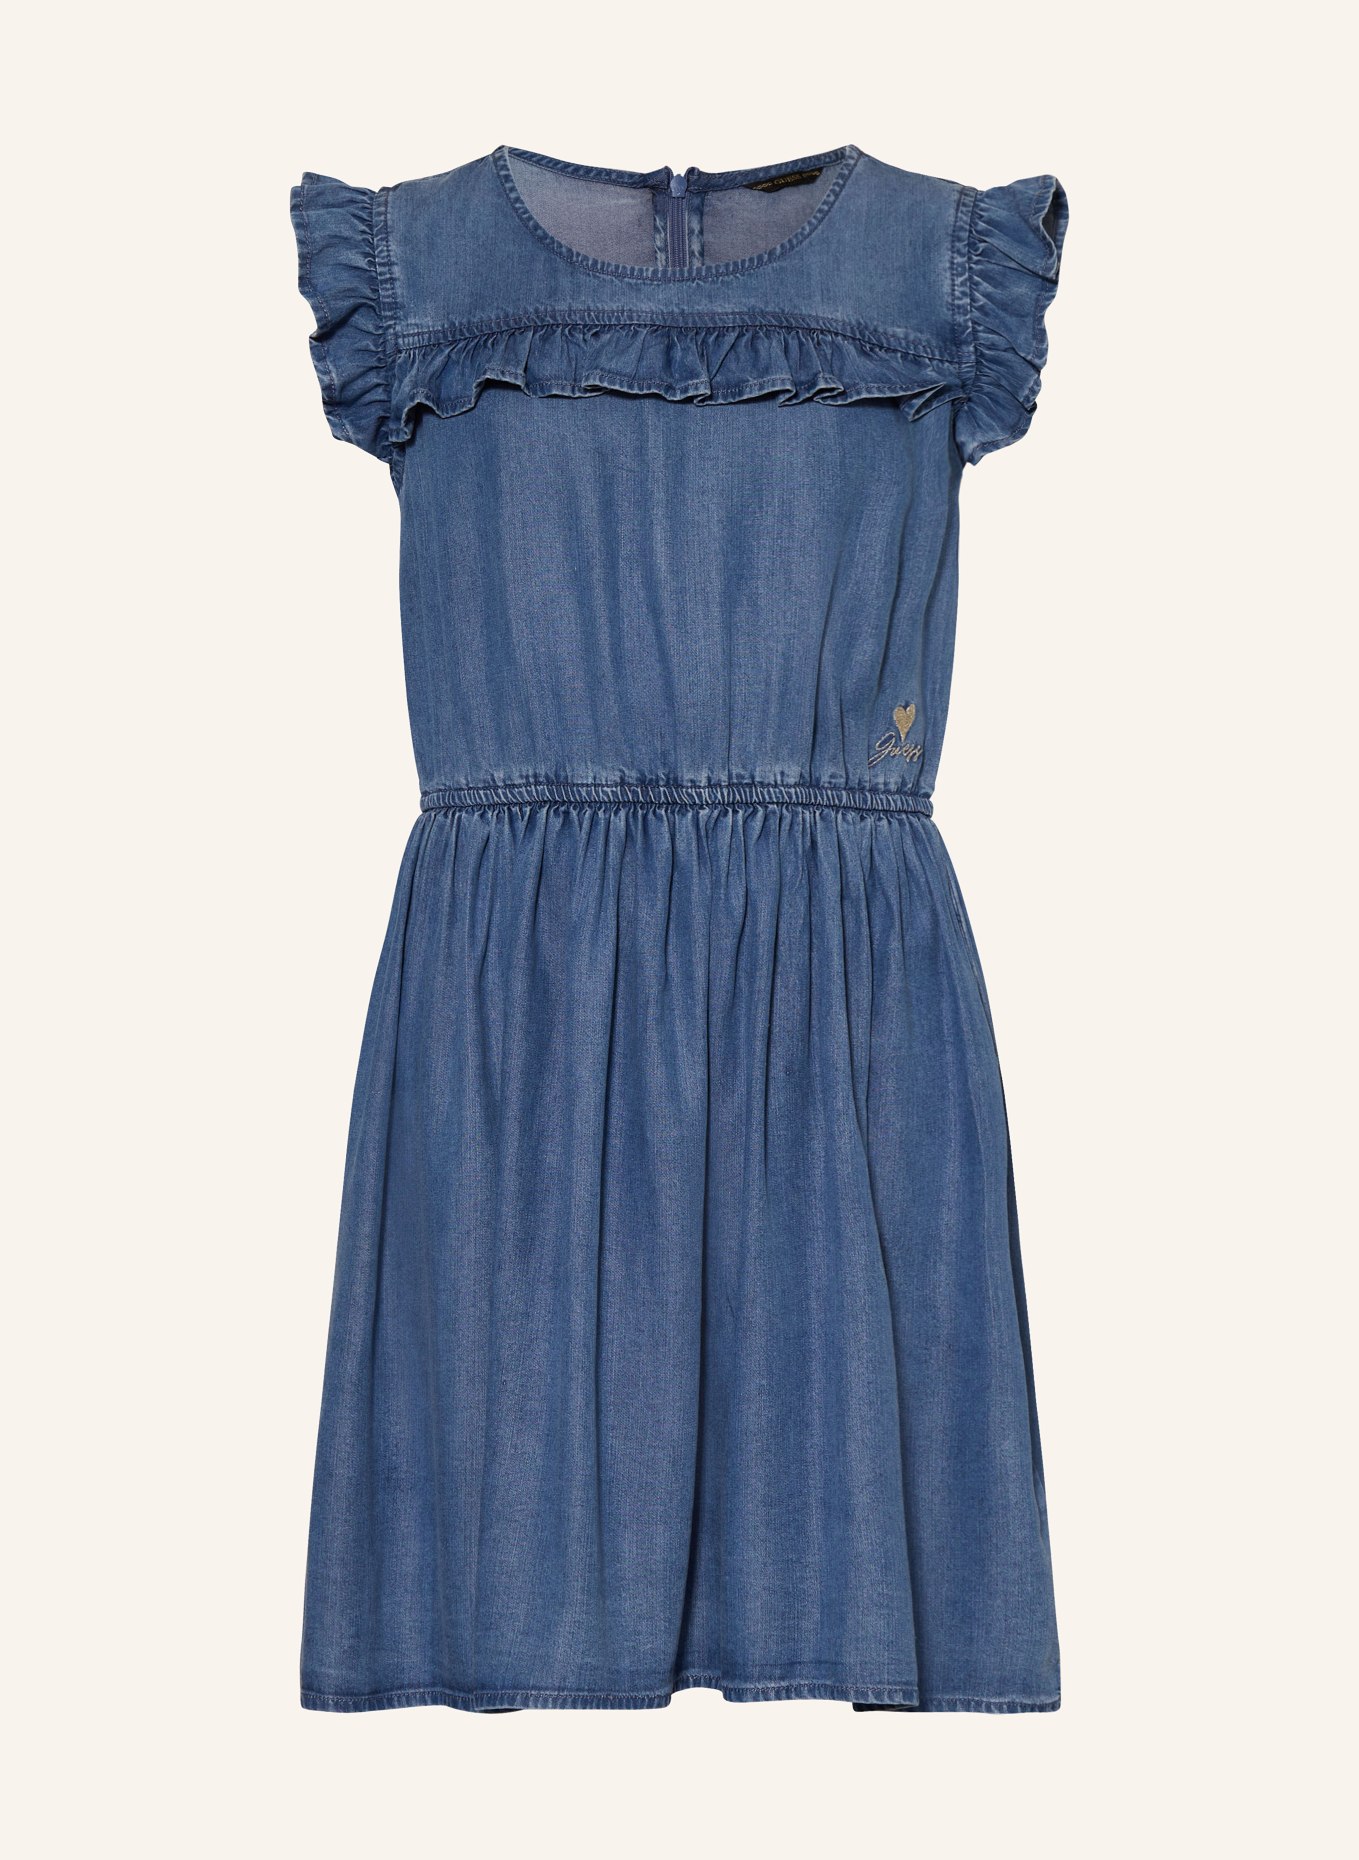 GUESS Kleid mit Rüschen in Jeansoptik, Farbe: BLAU (Bild 1)